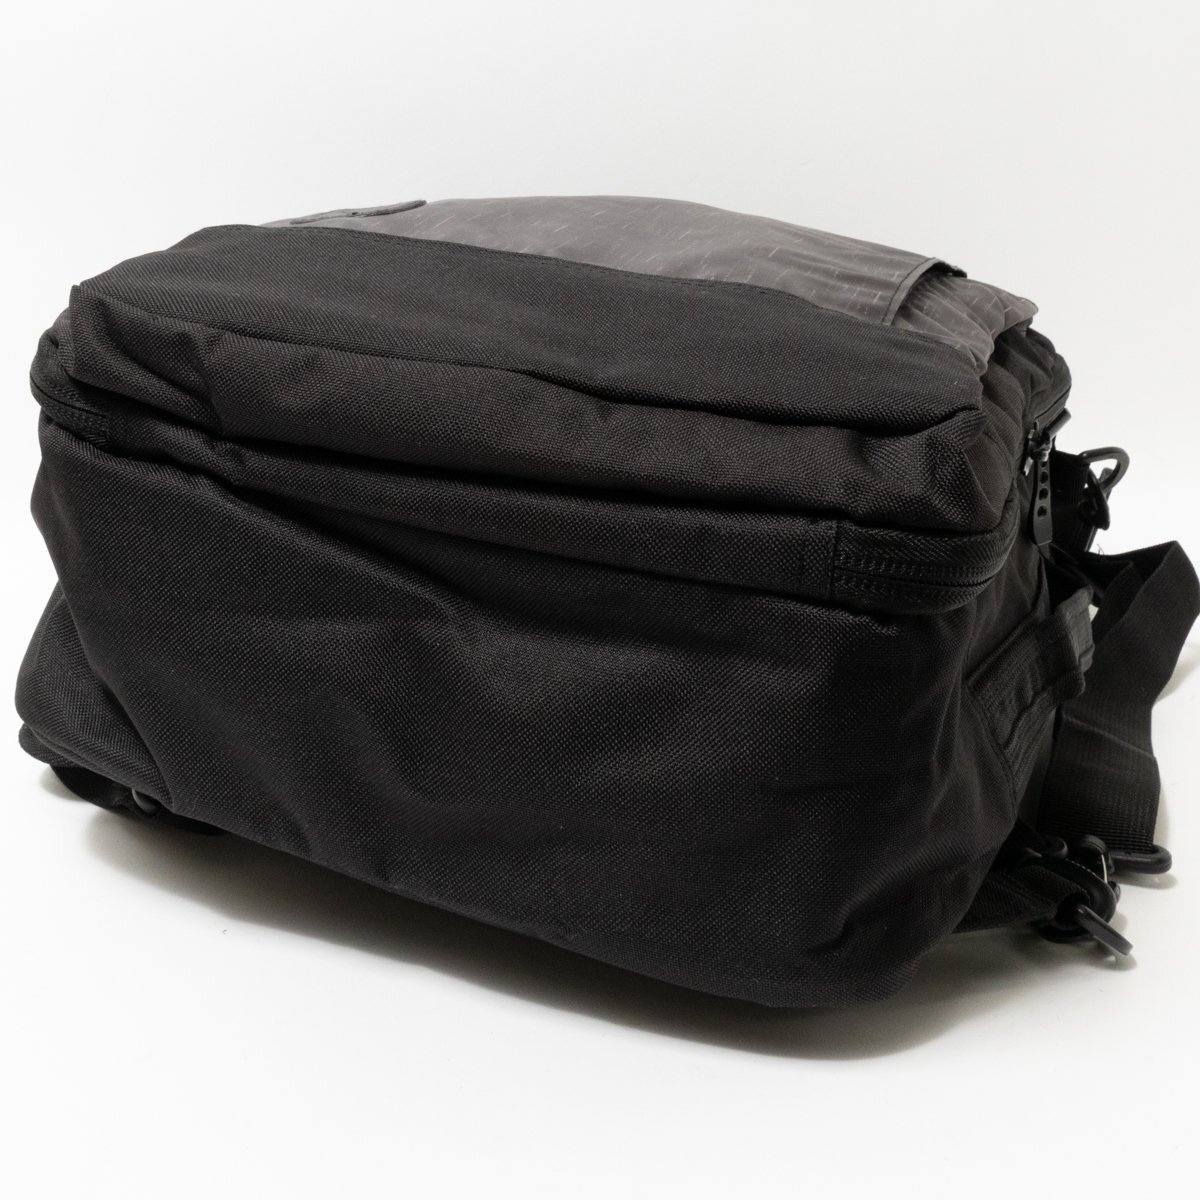 [1 иен старт ] не использовался с биркой Hynes Eagle высокий nz Eagle 3way сумка на плечо рюкзак мужской черный чёрный полиэстер 